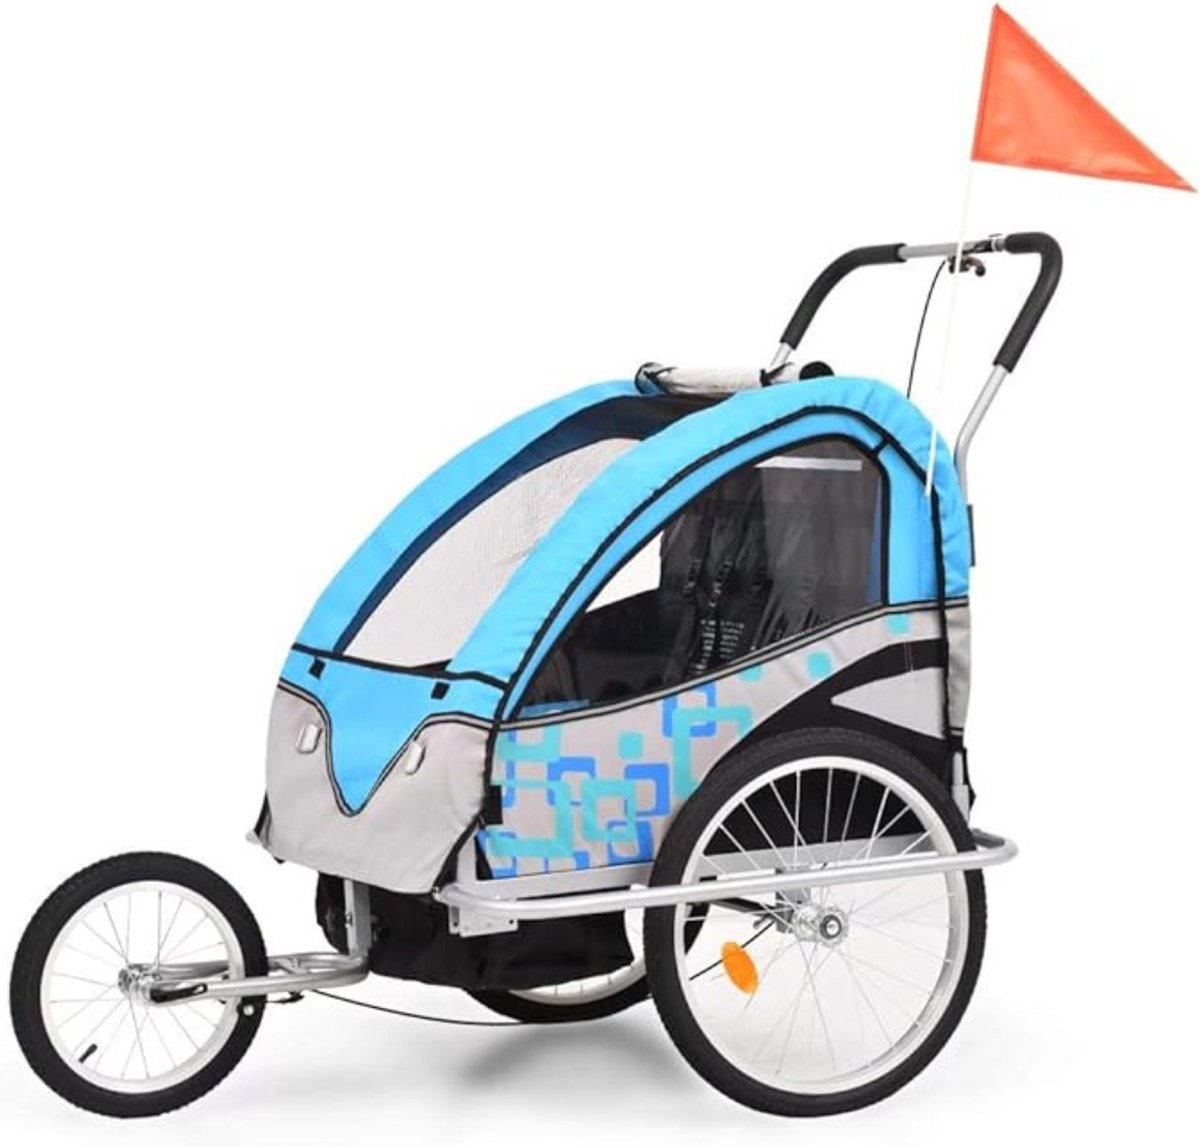 Fietskar - 2-IN-1 - Wandelwagen - Kinderfietskar Voor 1-2 Kinderen - Blauw